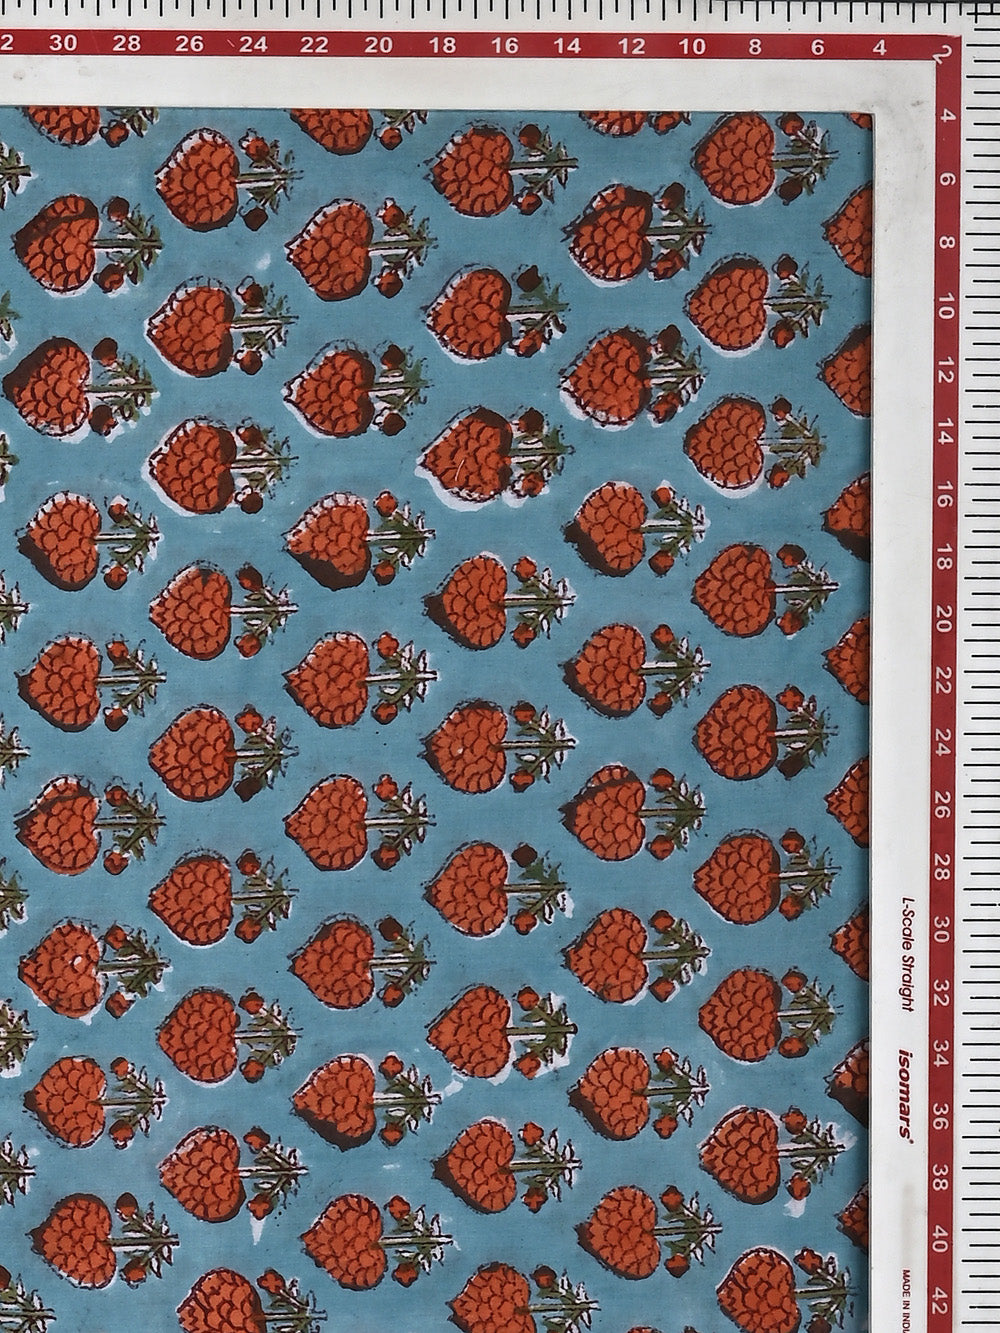 Orange Paan Flower Booti Pattern Cotton Cambric Sanganeri Hand Block Printed Fabric